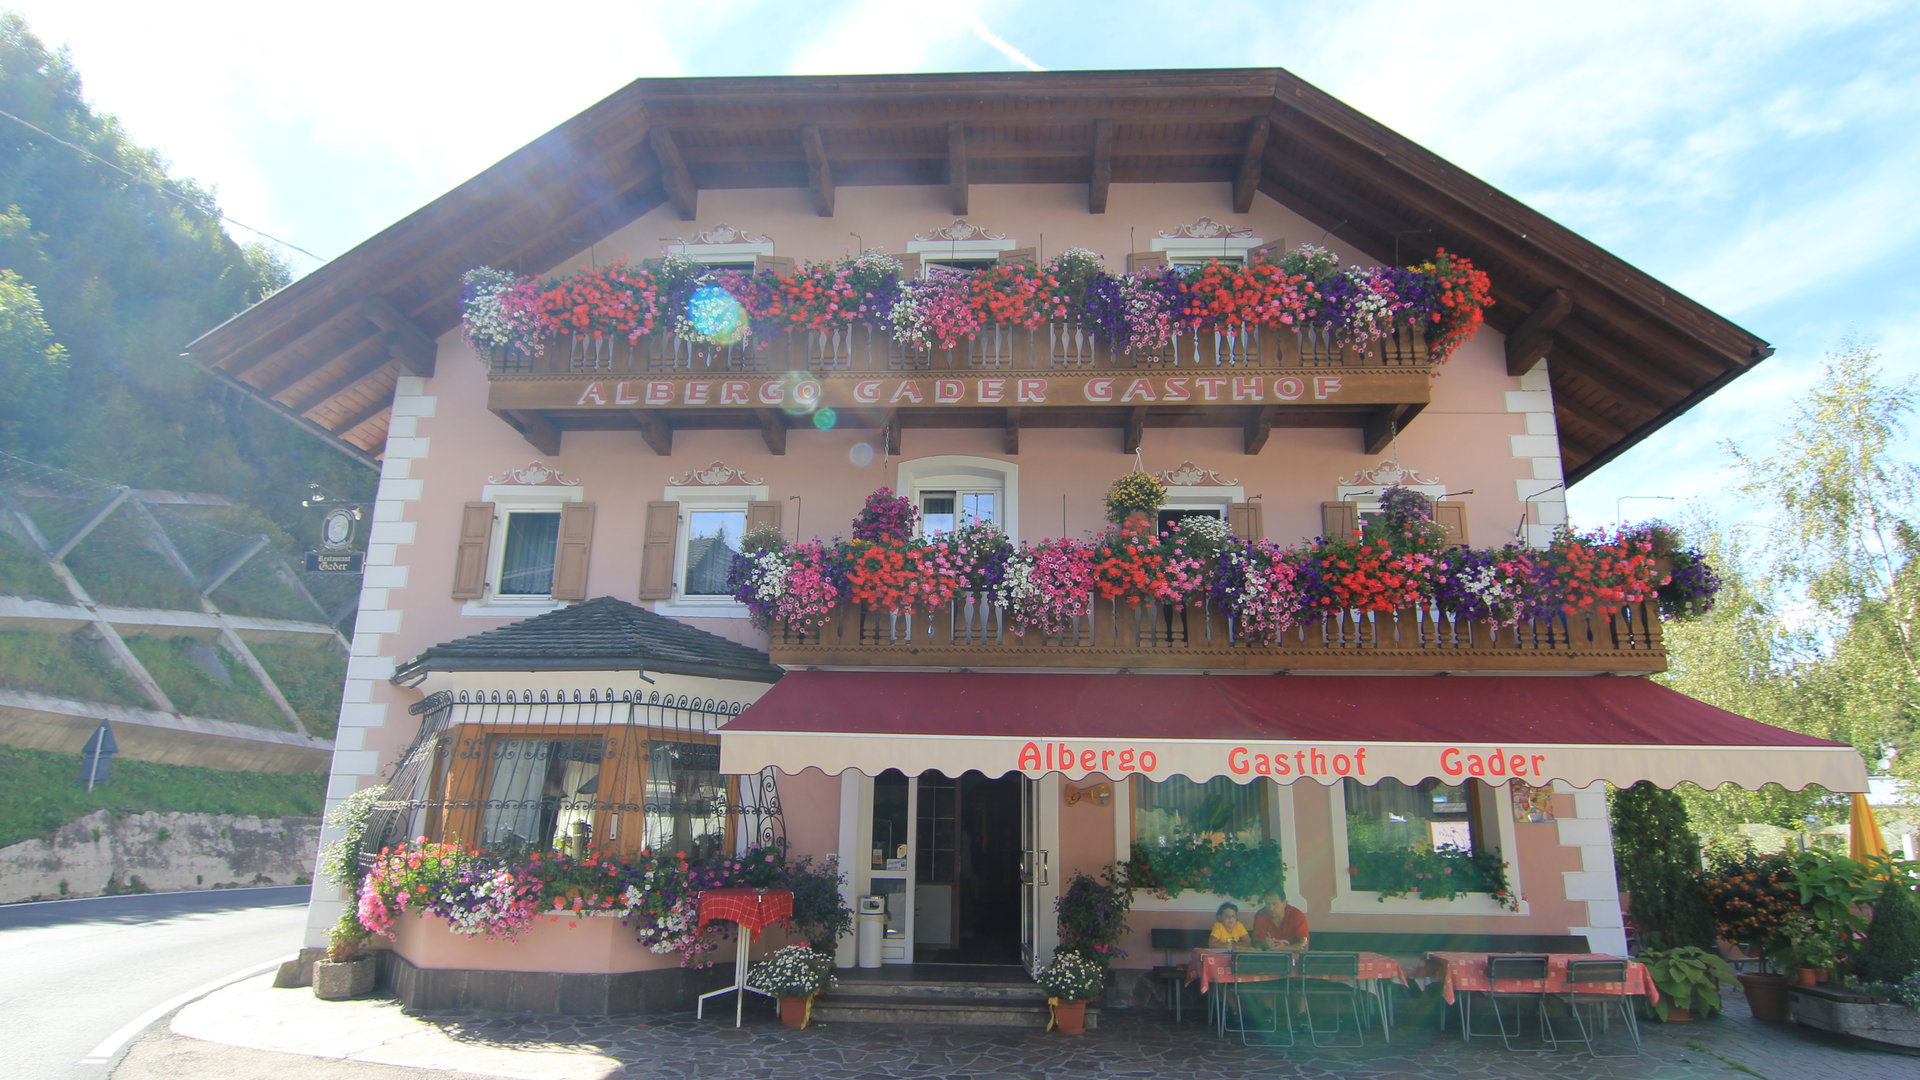 Unser Gasthaus mit dem Blumenbalkonen